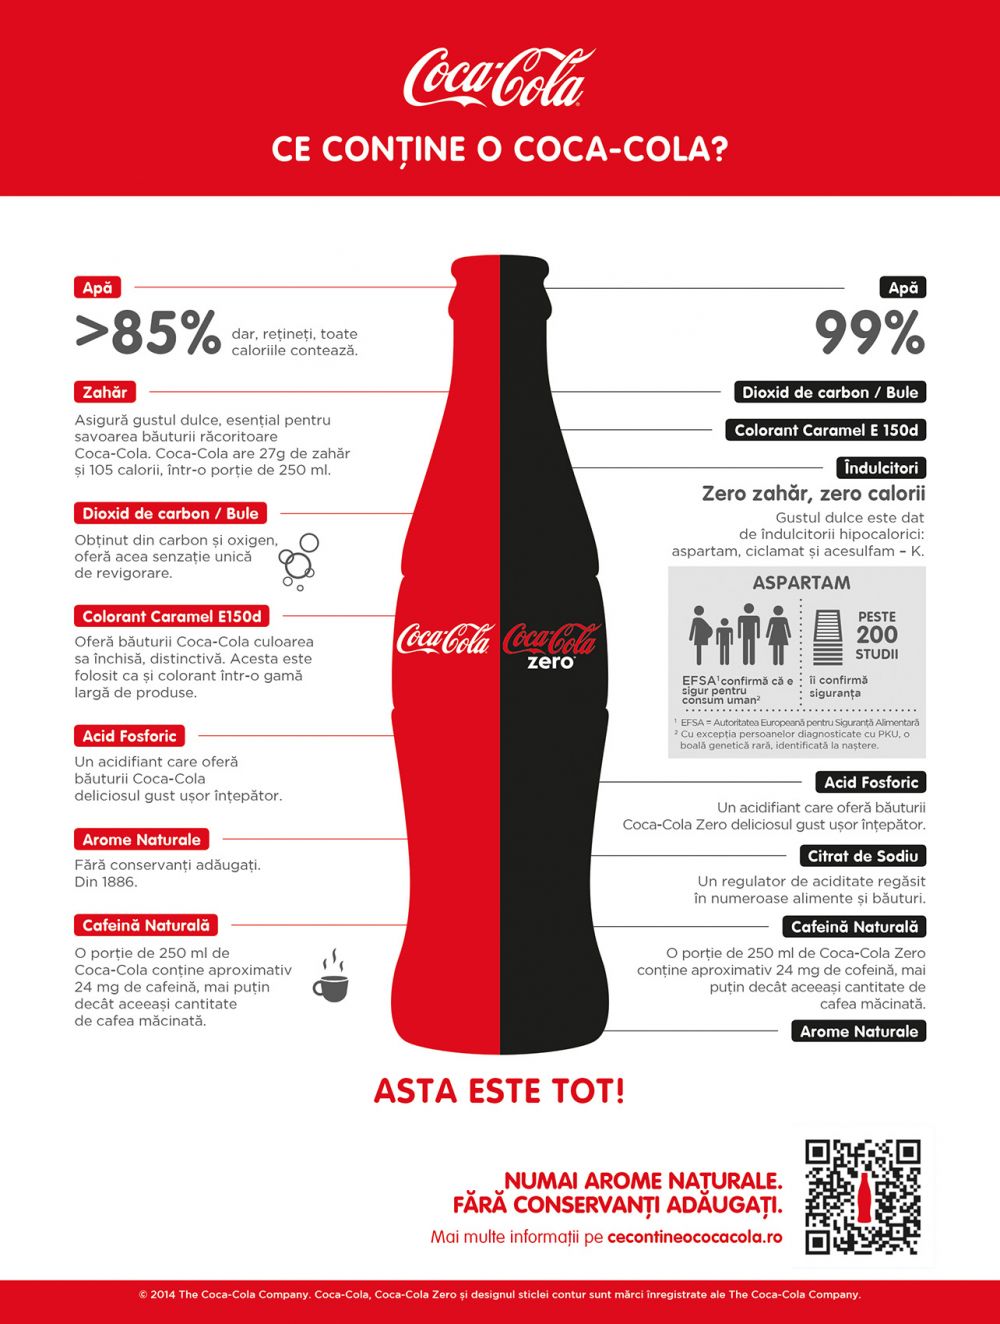 Secretele Coca-Cola, intr-un singur grafic. De unde vine gustul usor intepator _2